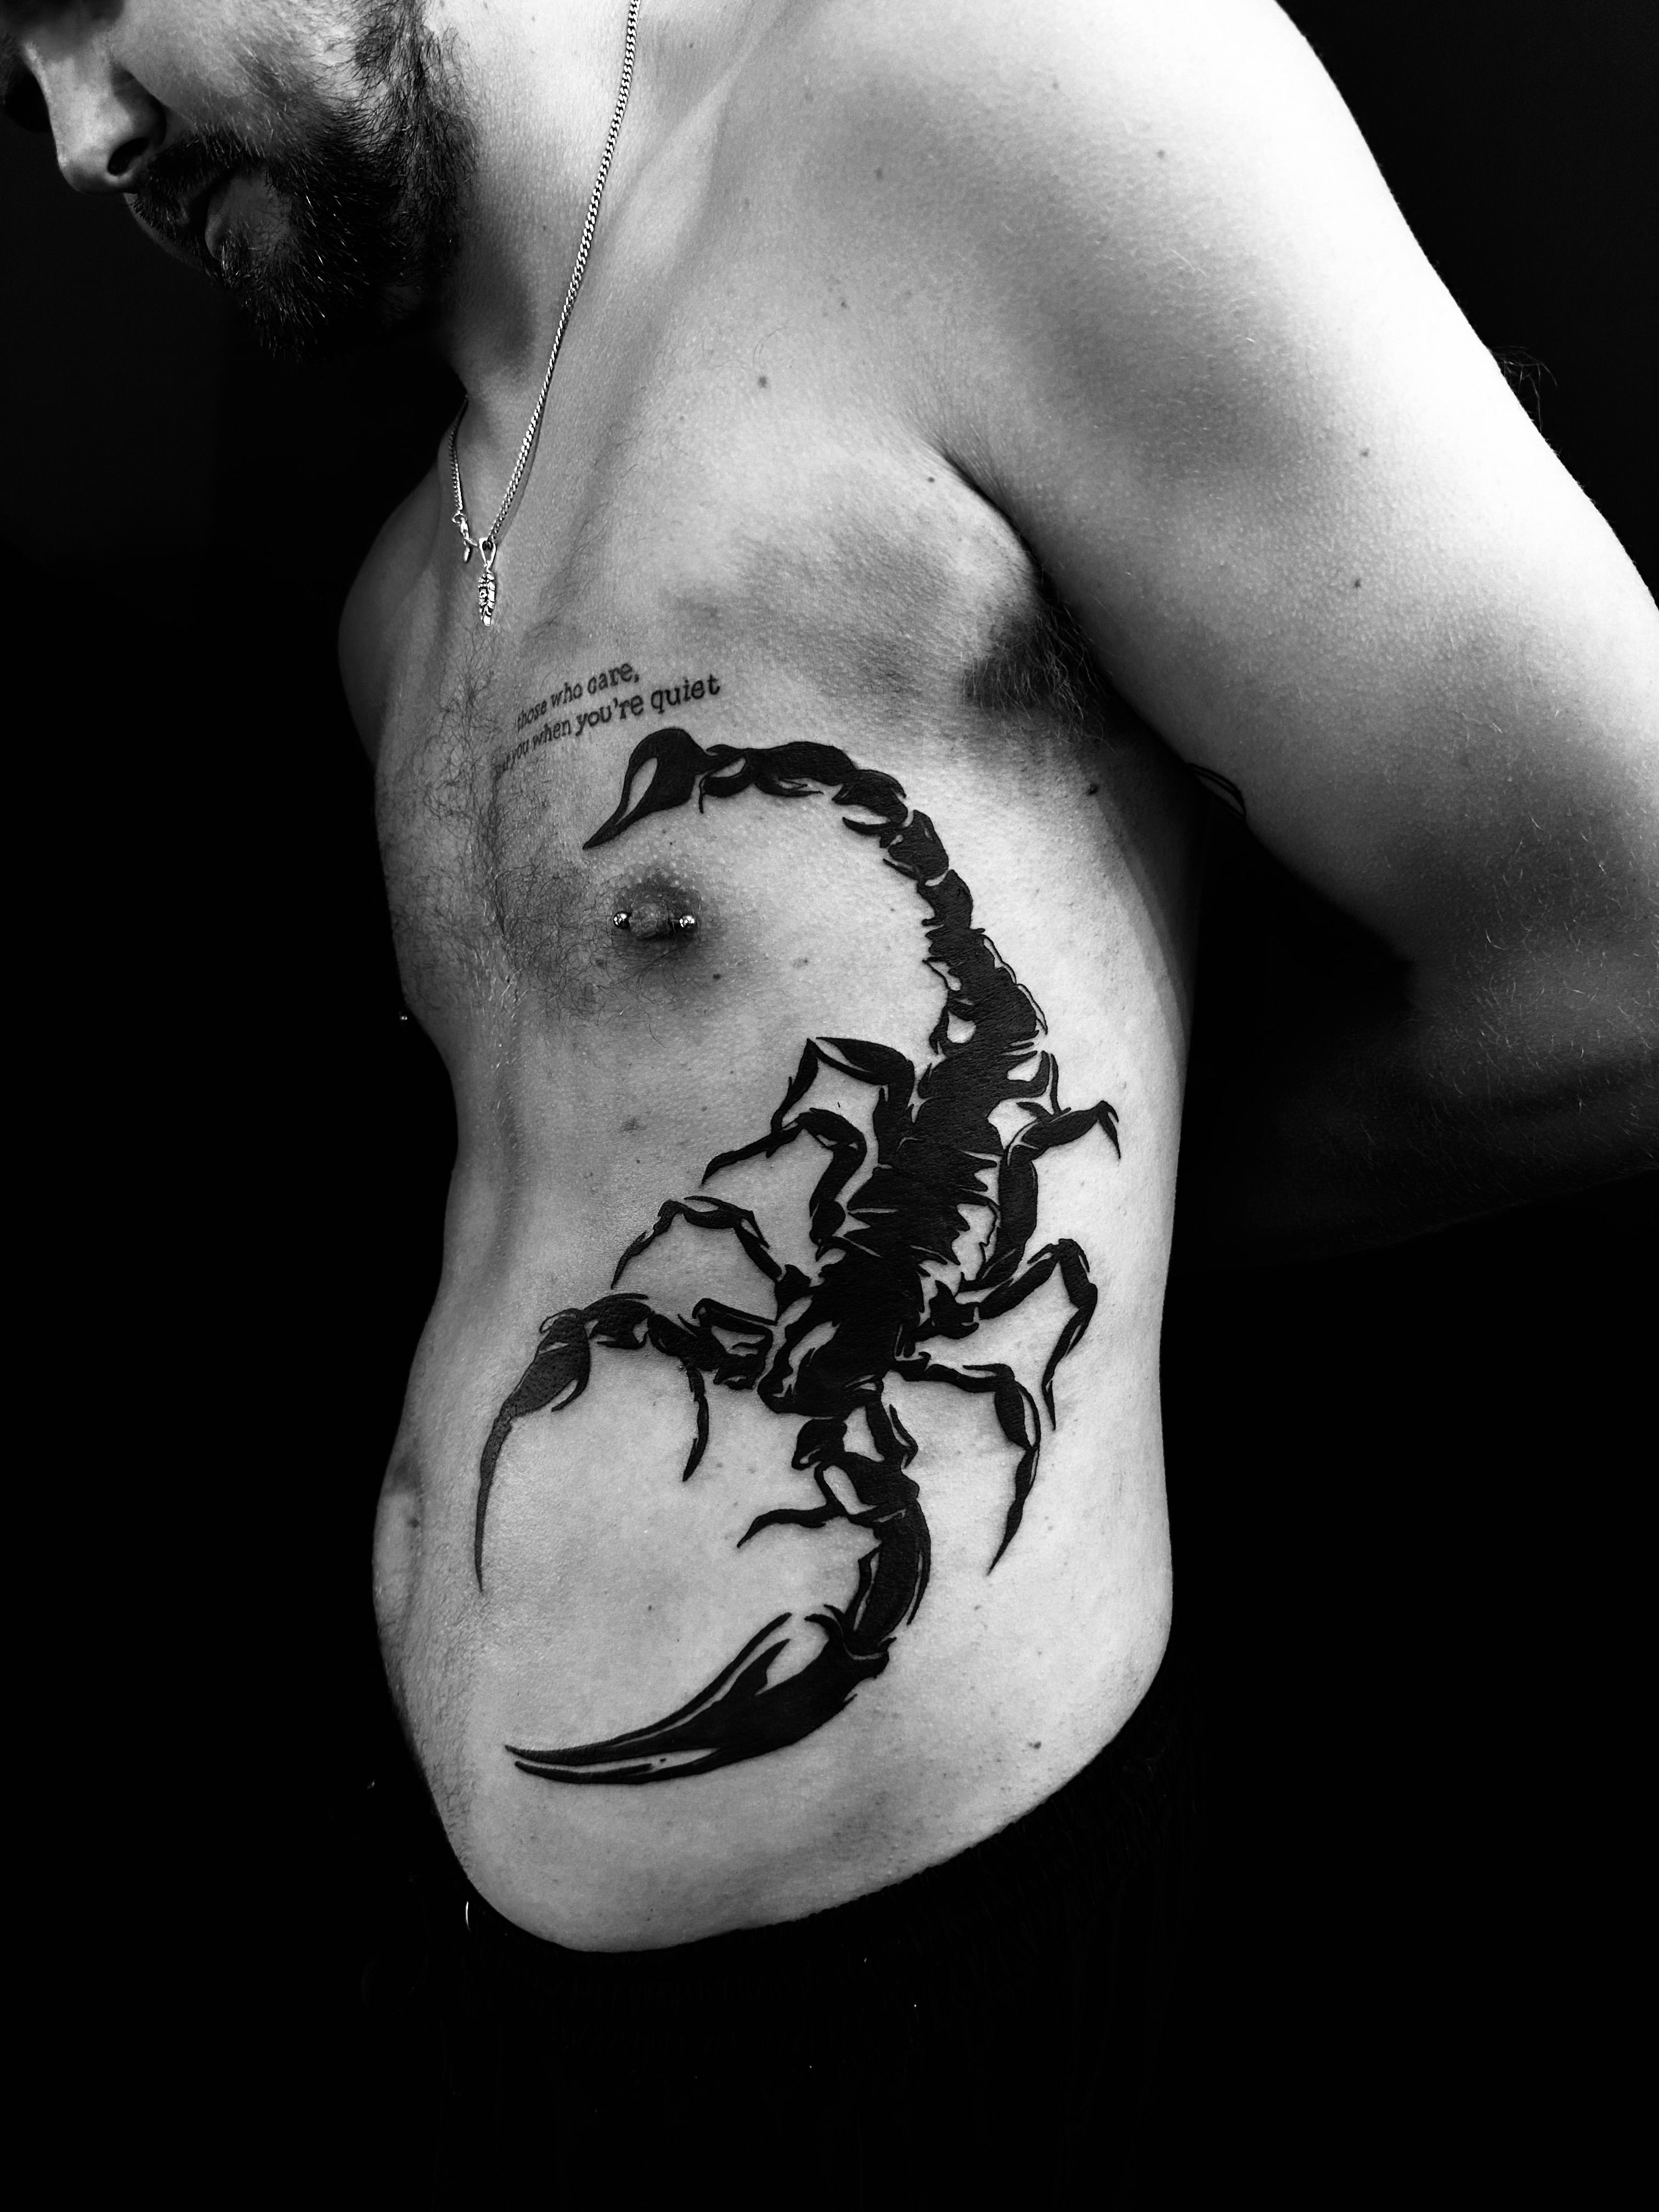 Tattoo uploaded by Nenad Radiković • scorpion#tattoo#backtattoo • Tattoodo